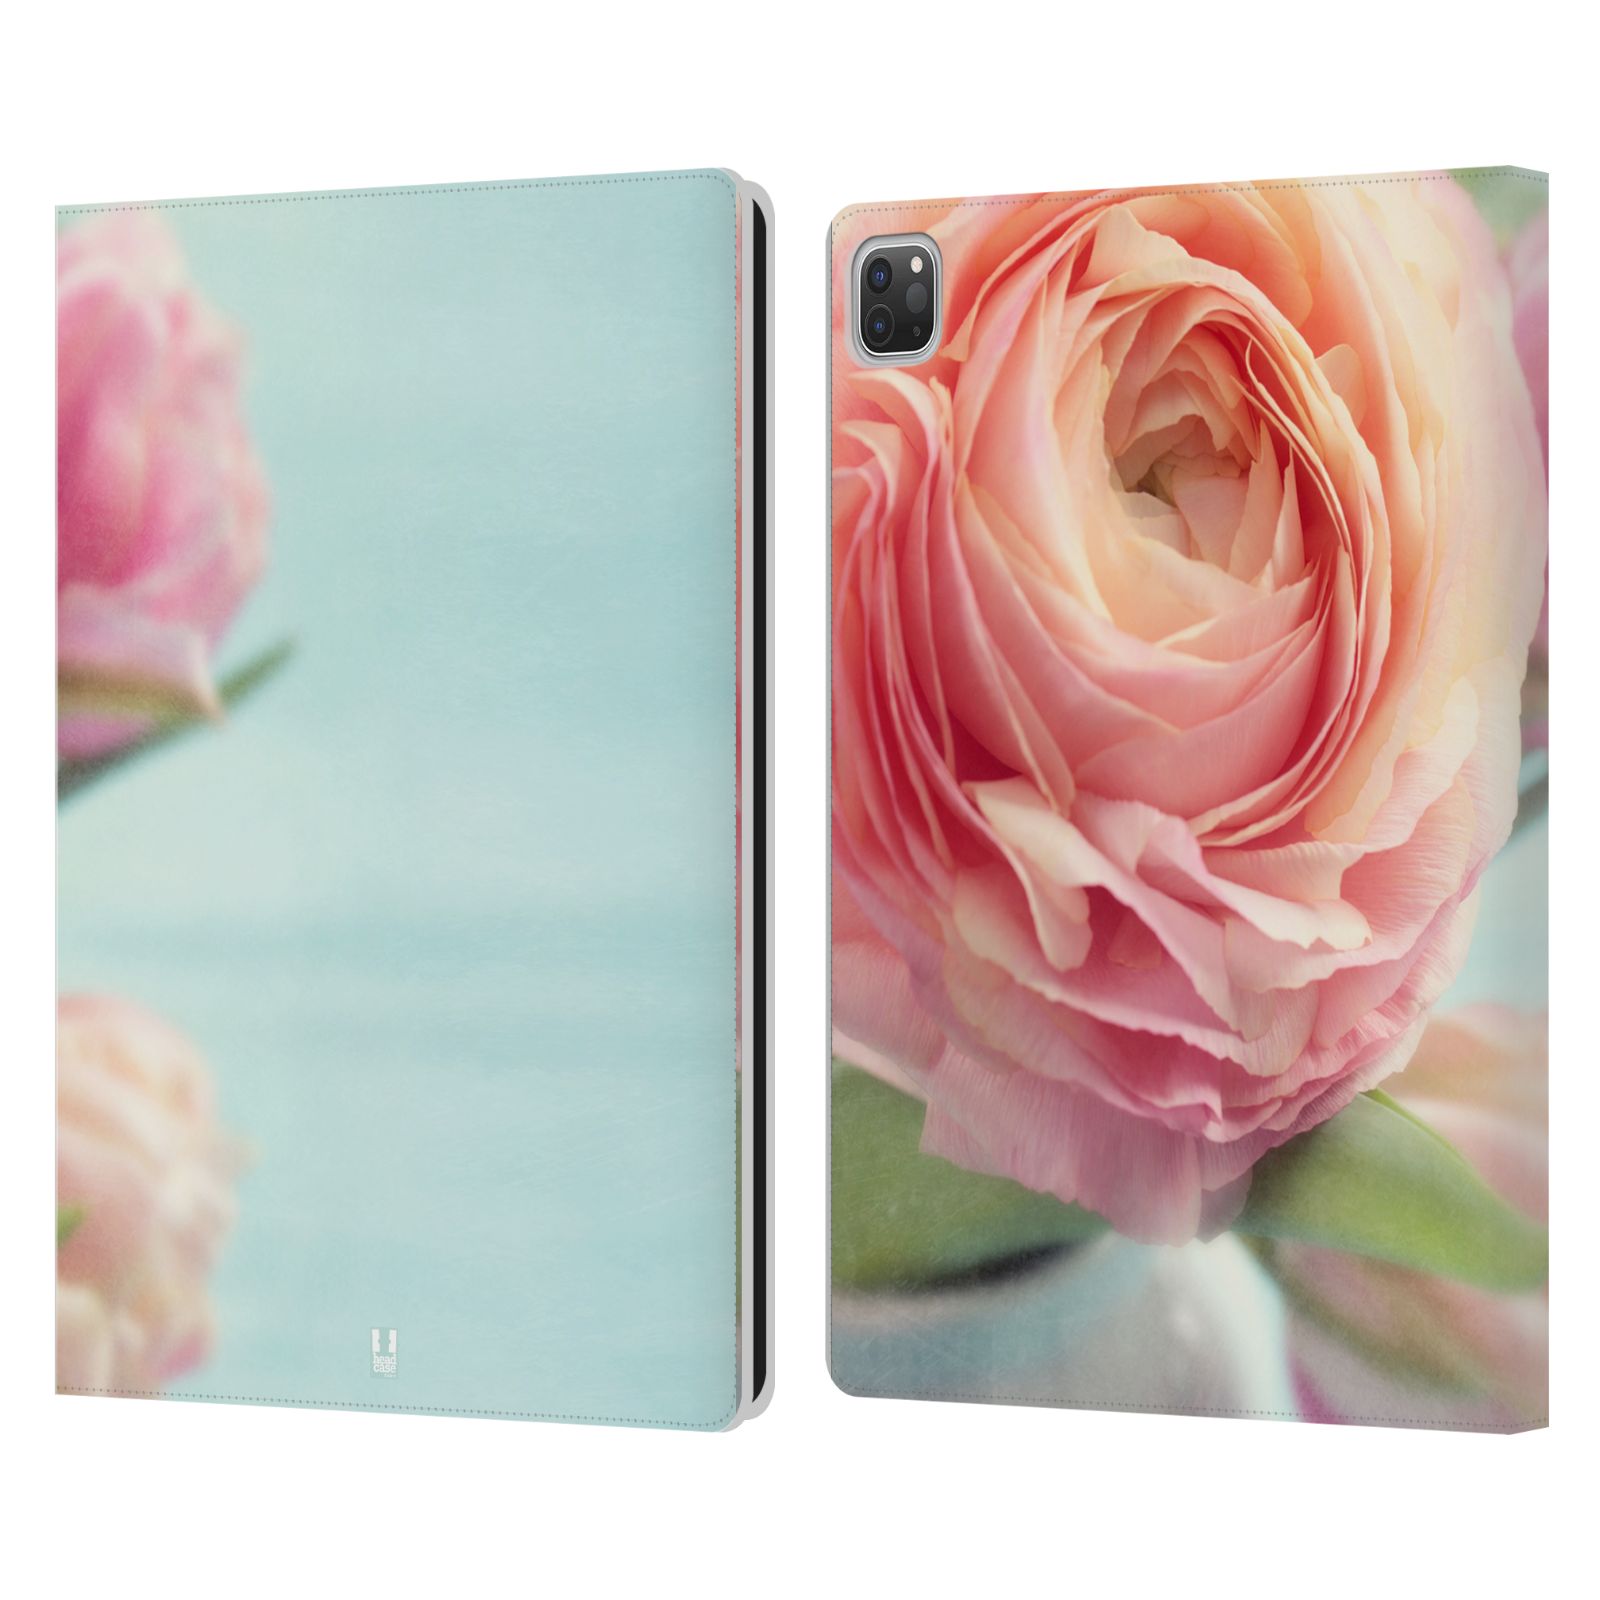 Pouzdro pro tablet Apple Ipad Pro 12.9 - HEAD CASE - květy foto růže růžová